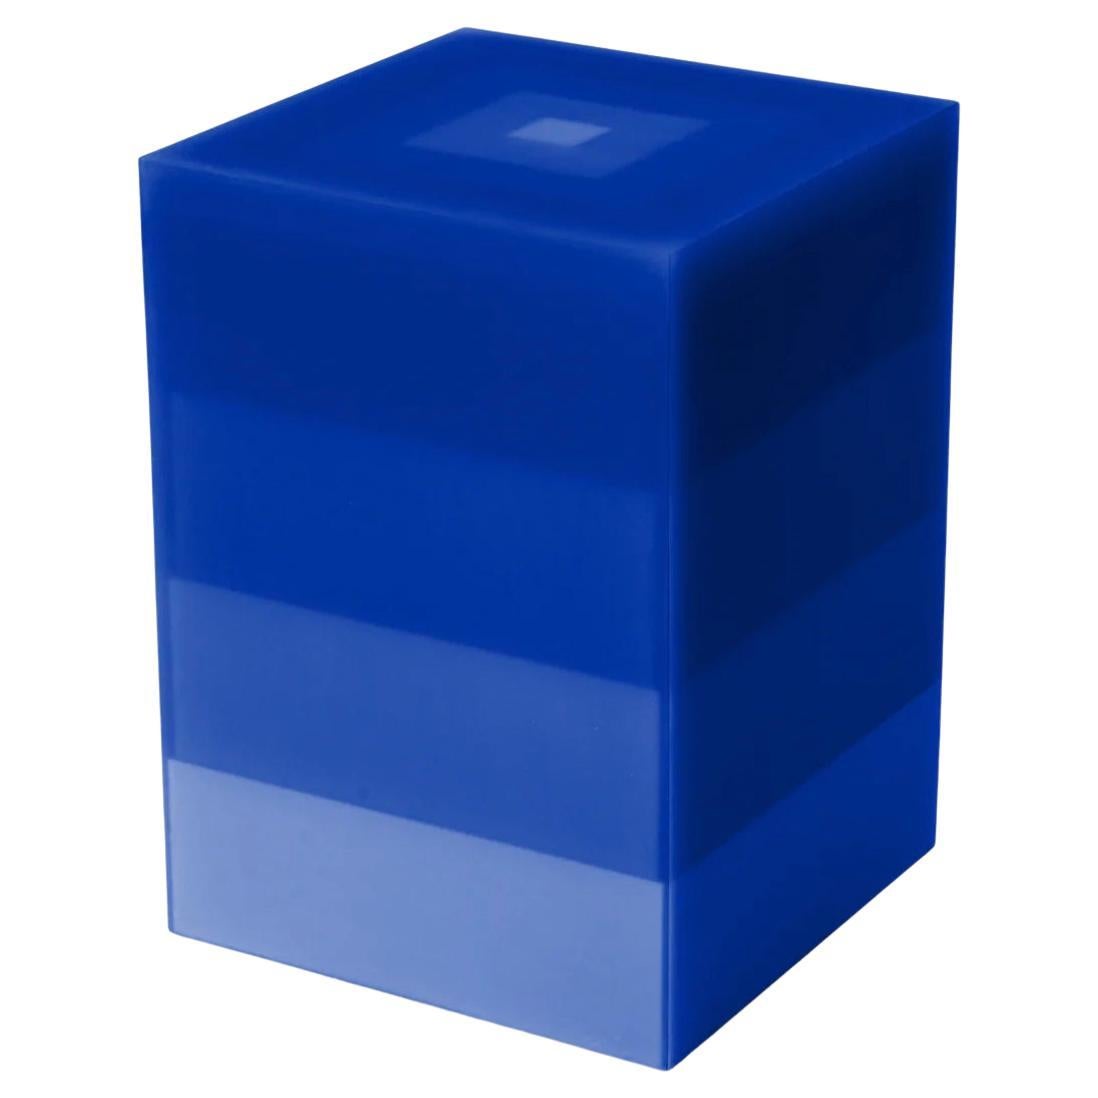 Table d'appoint/tabouret Pyramid en résine bleue par Facture, REP par Tuleste Factory